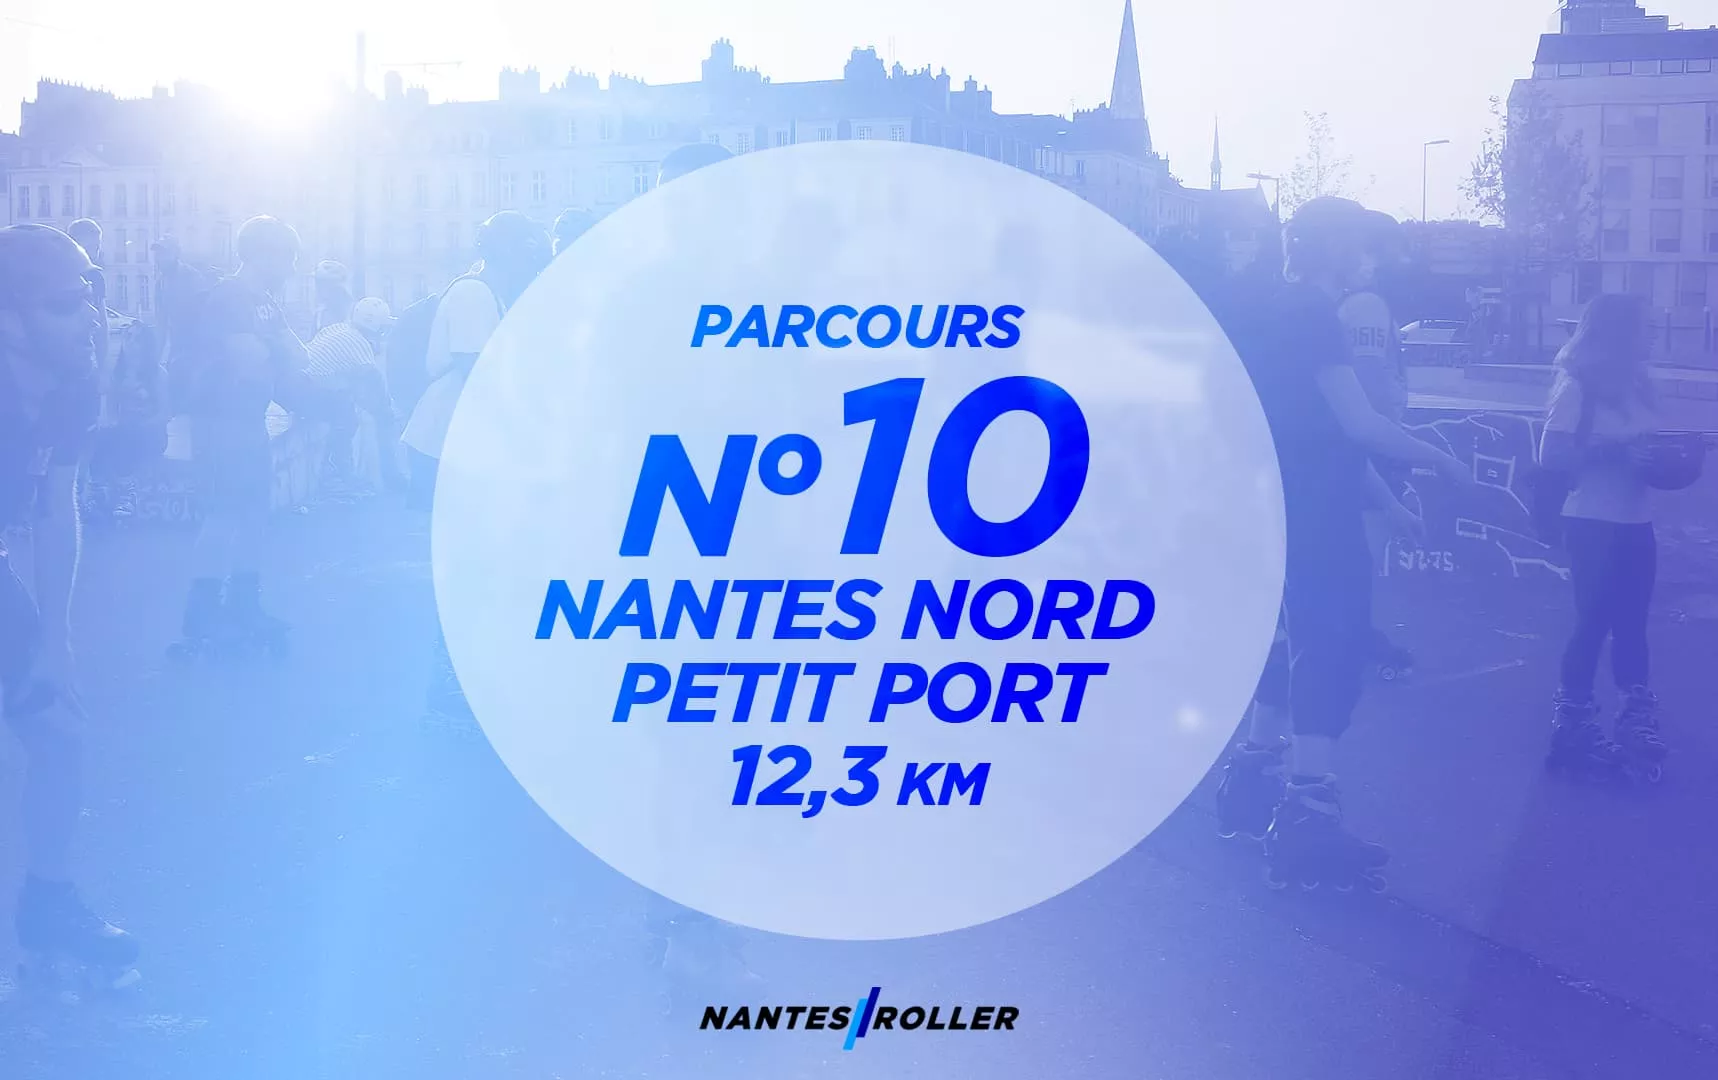 Représentation du parcours NR 10 – Nantes-Nord – Petit port